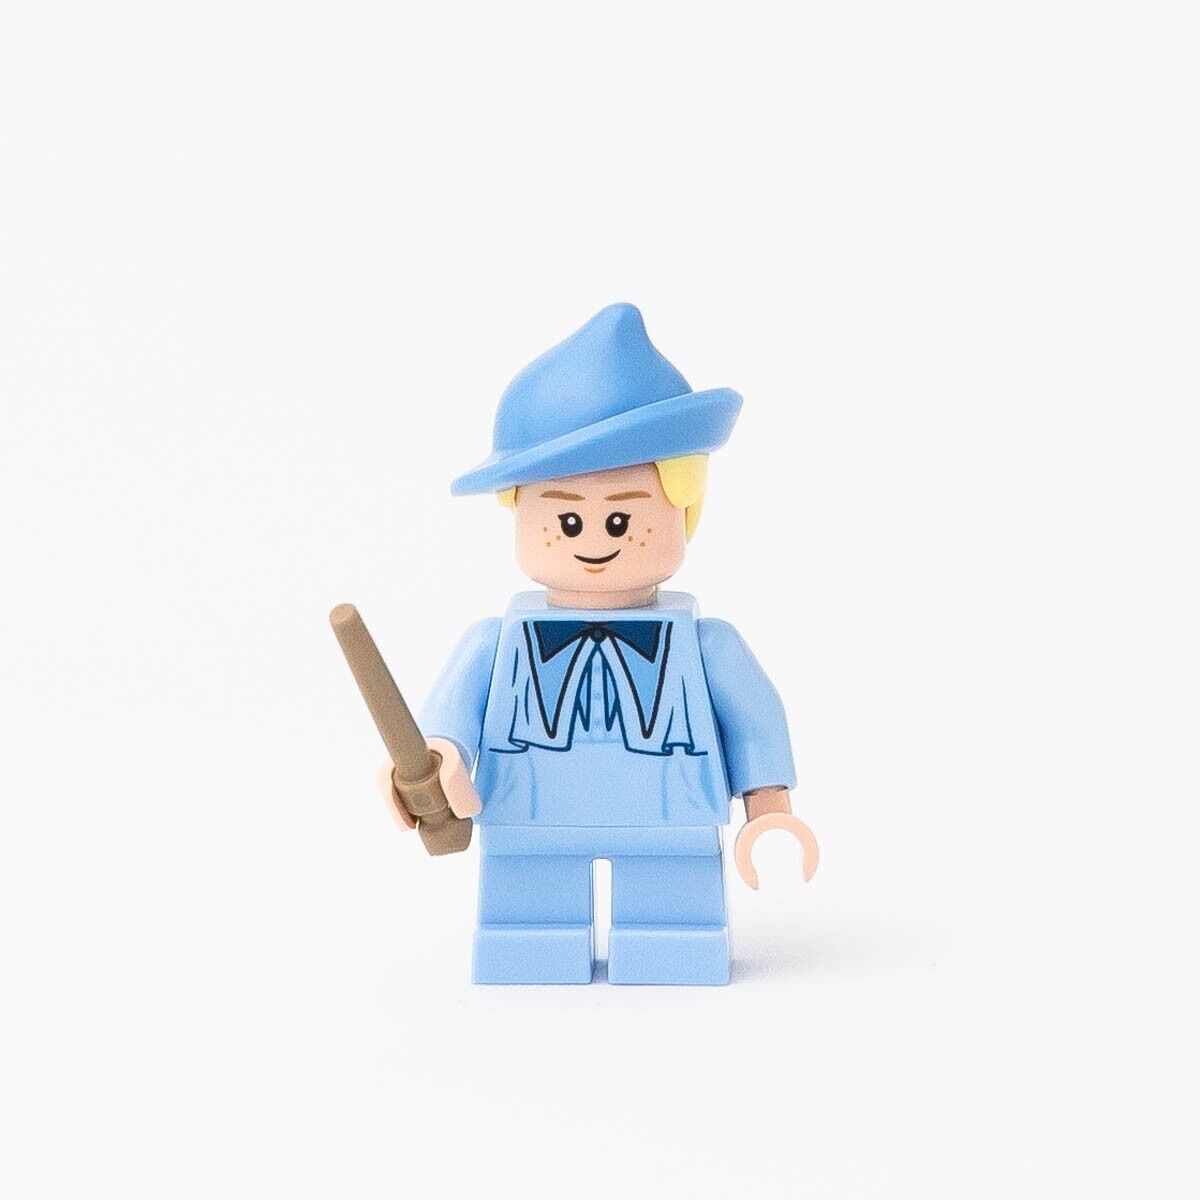 New LEGO Gabrielle Delacour Minifigure - Harry Potter - 75958 (hp203)